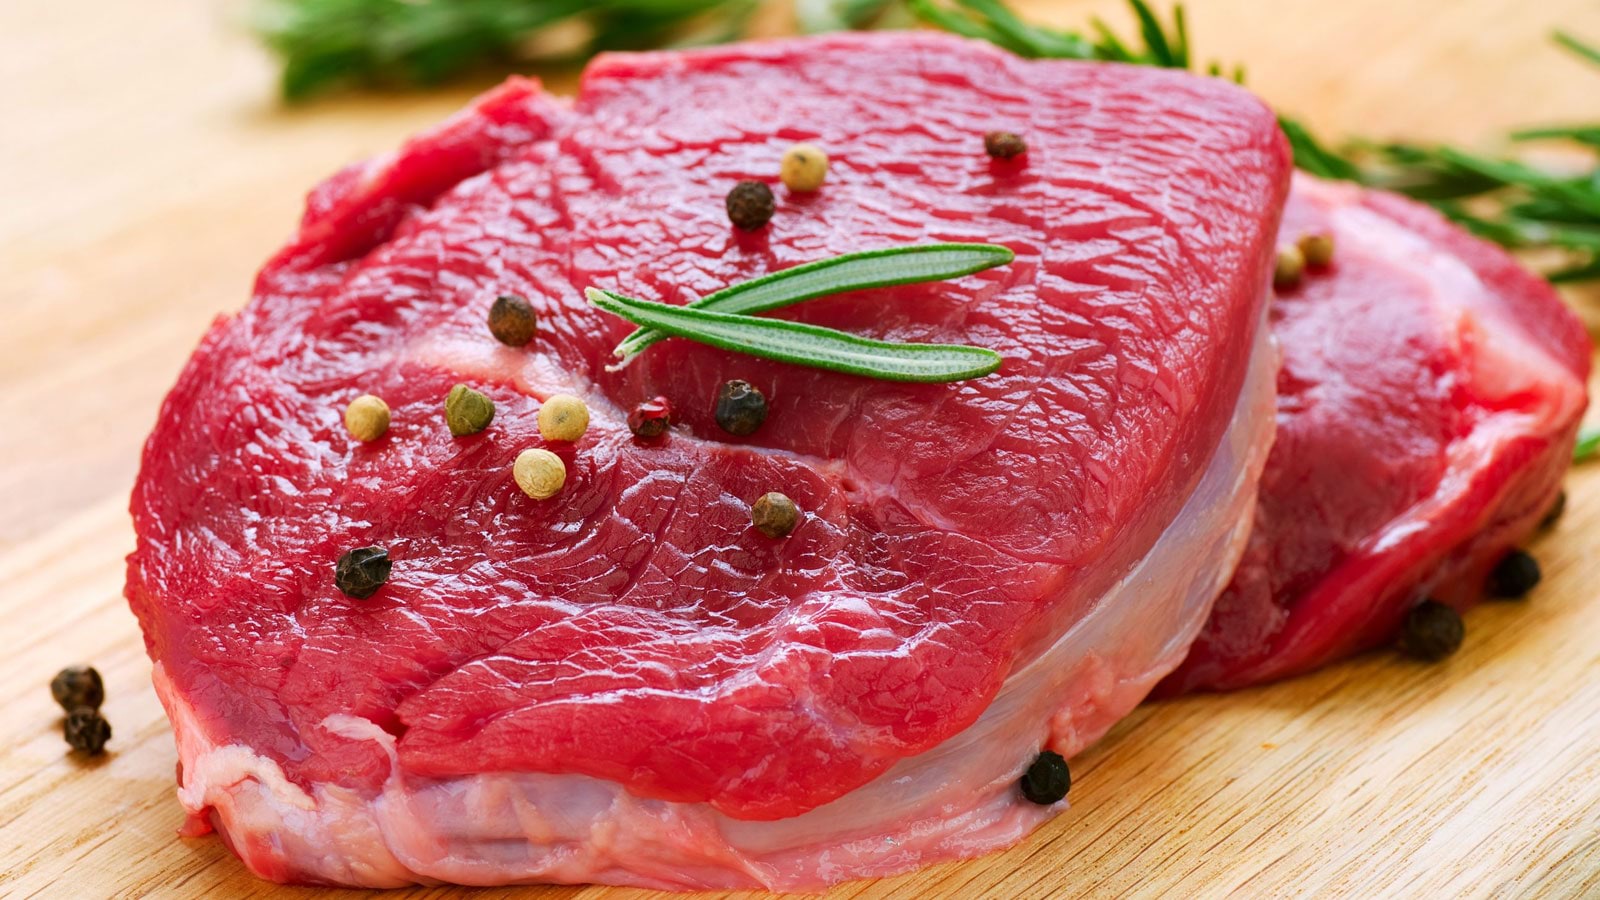 دراسة توضح الفرق بين فوائد اللحوم النباتية والحيوانية